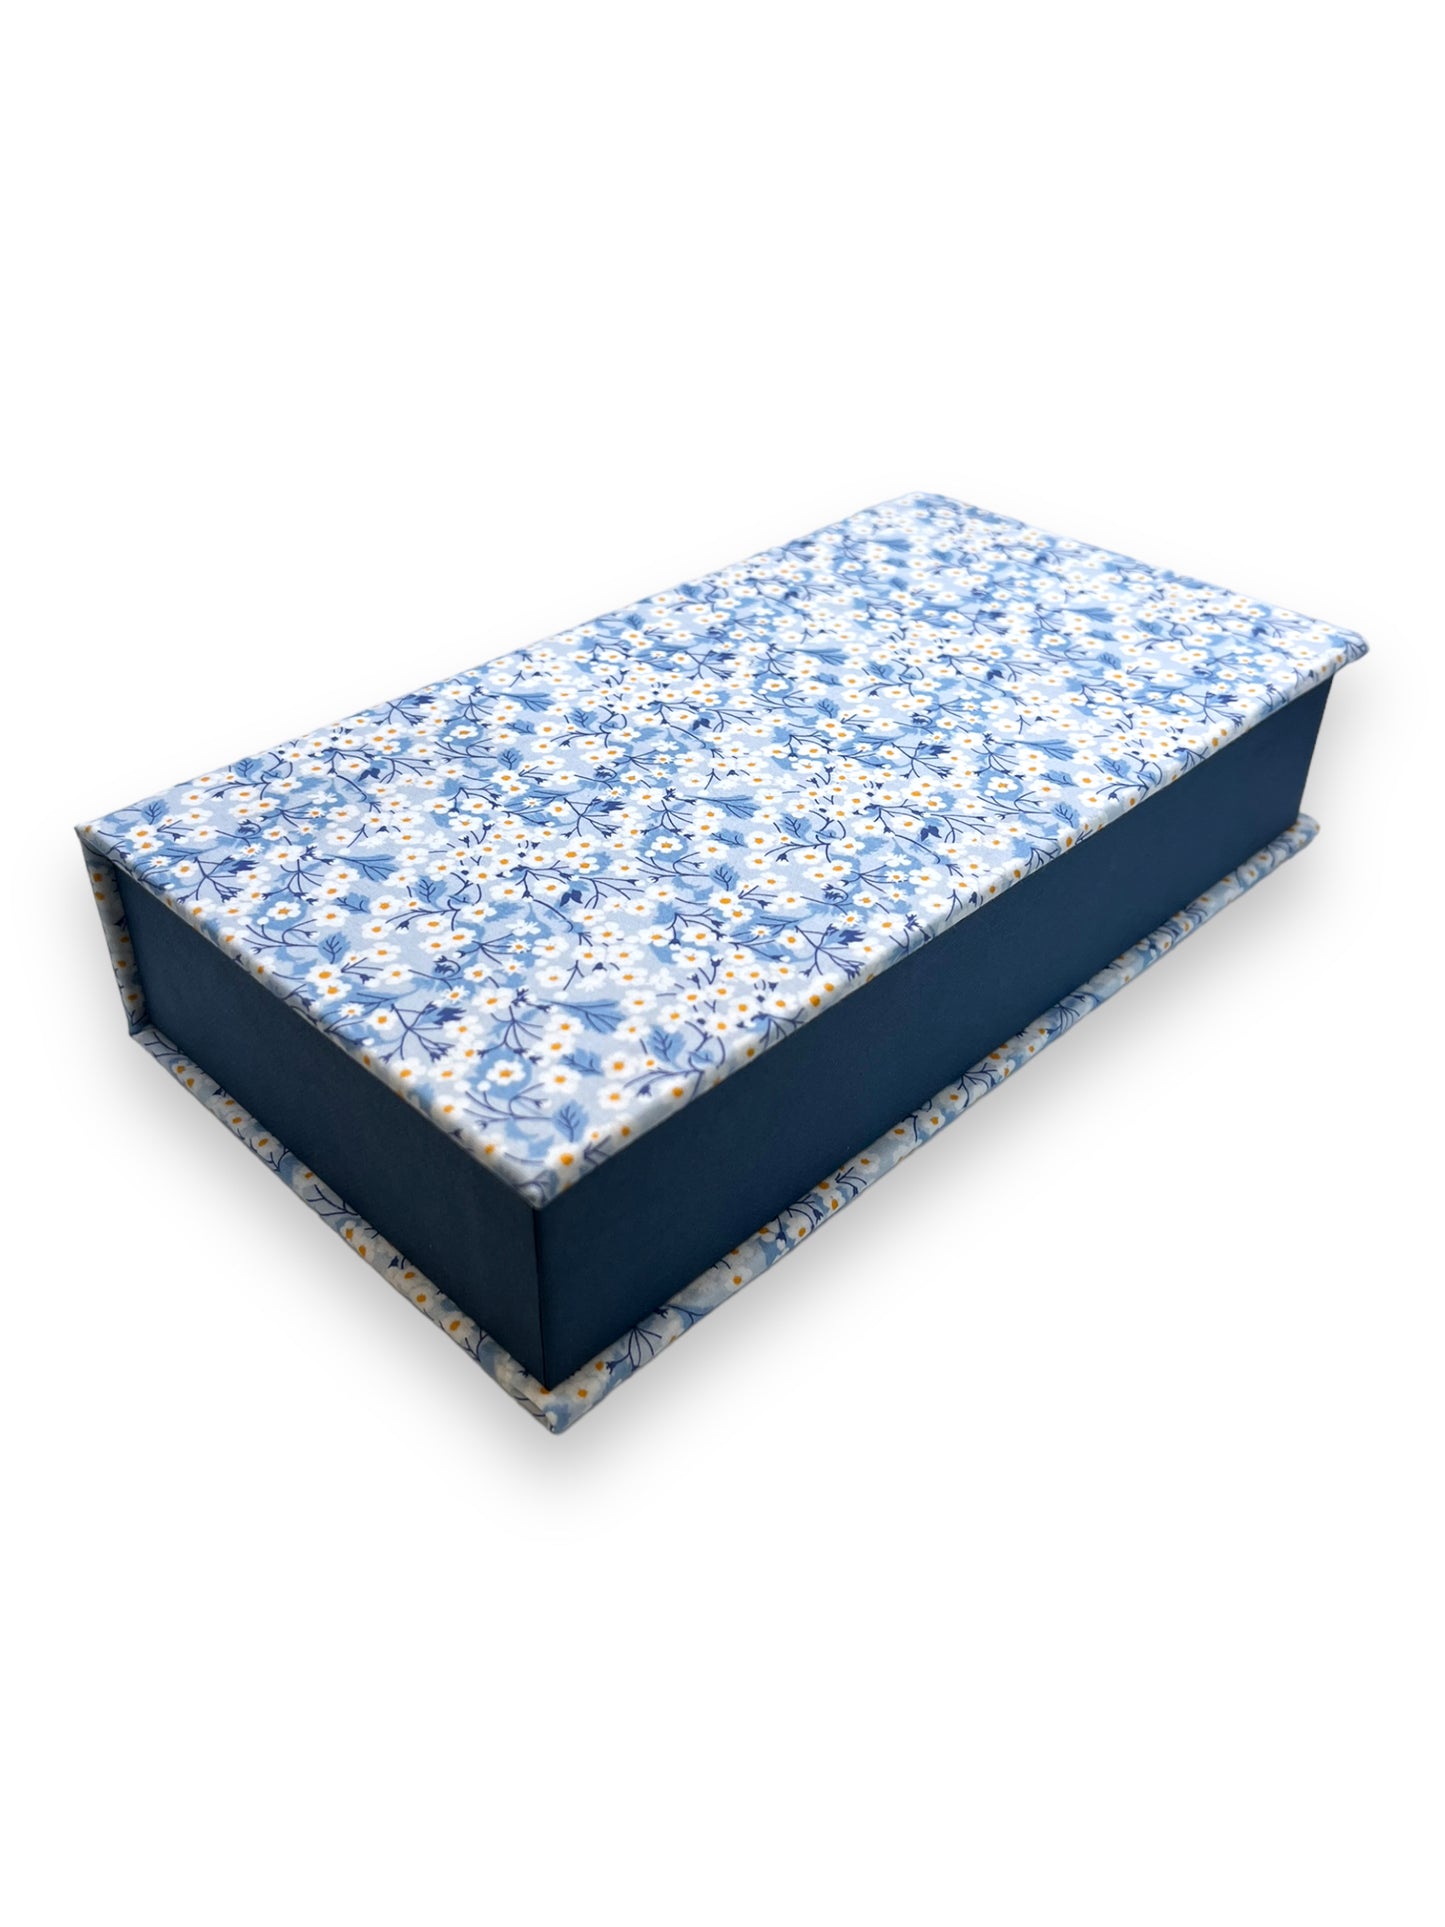 Fabric Wrapped Box - Liberty Mitsi Blue